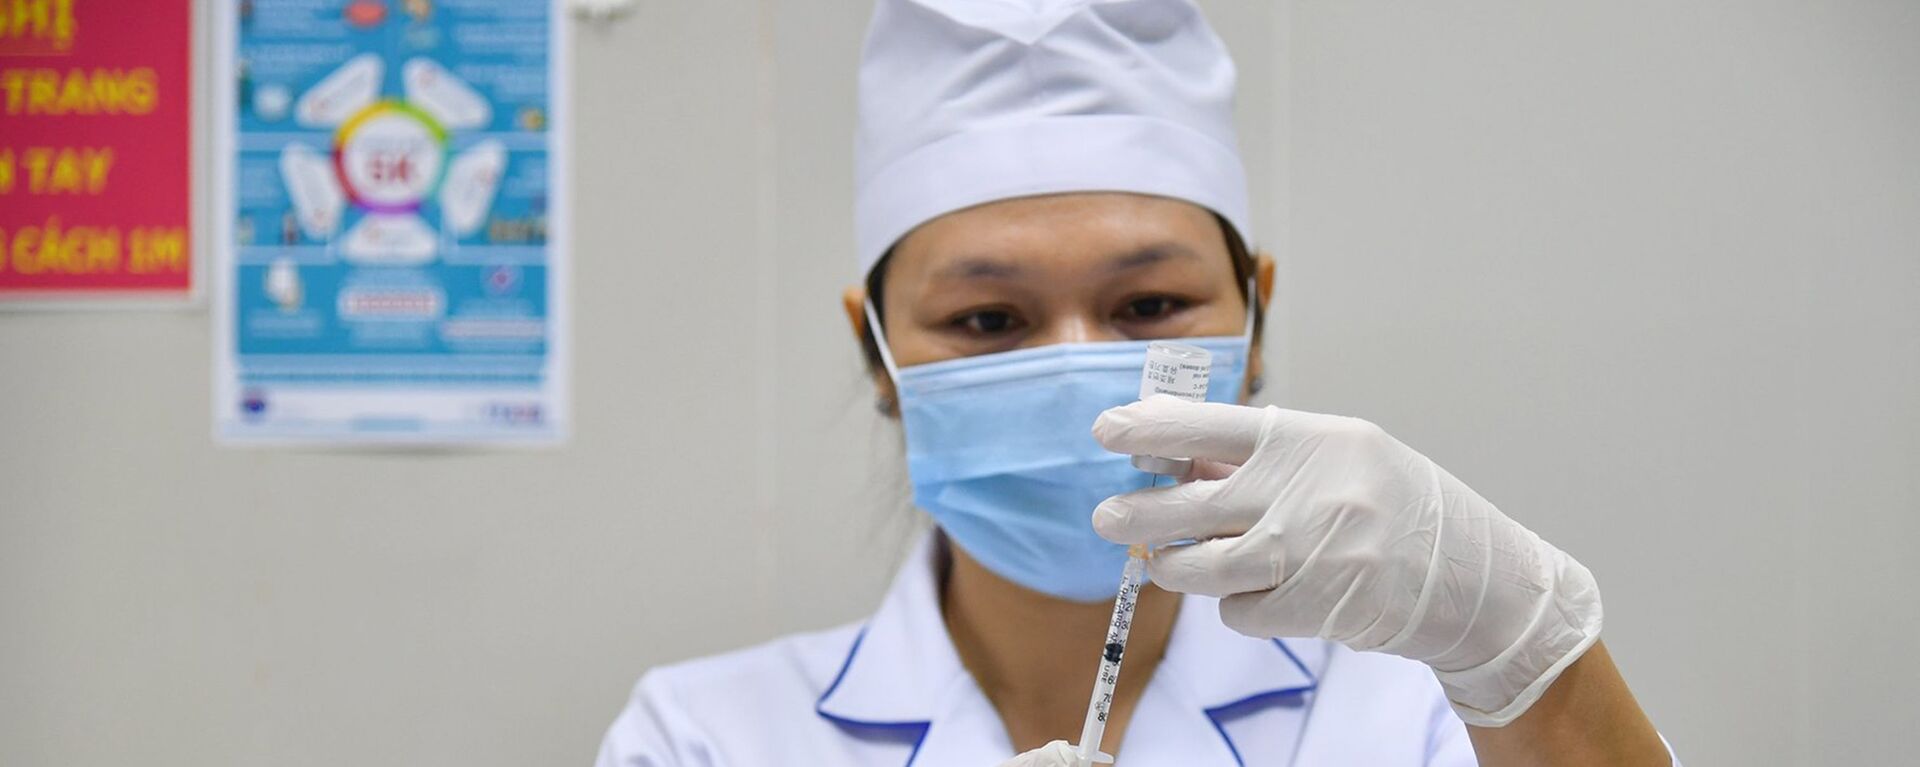 Y bác sỹ chuẩn bị vaccine trước khi tiêm. - Sputnik Việt Nam, 1920, 07.04.2021